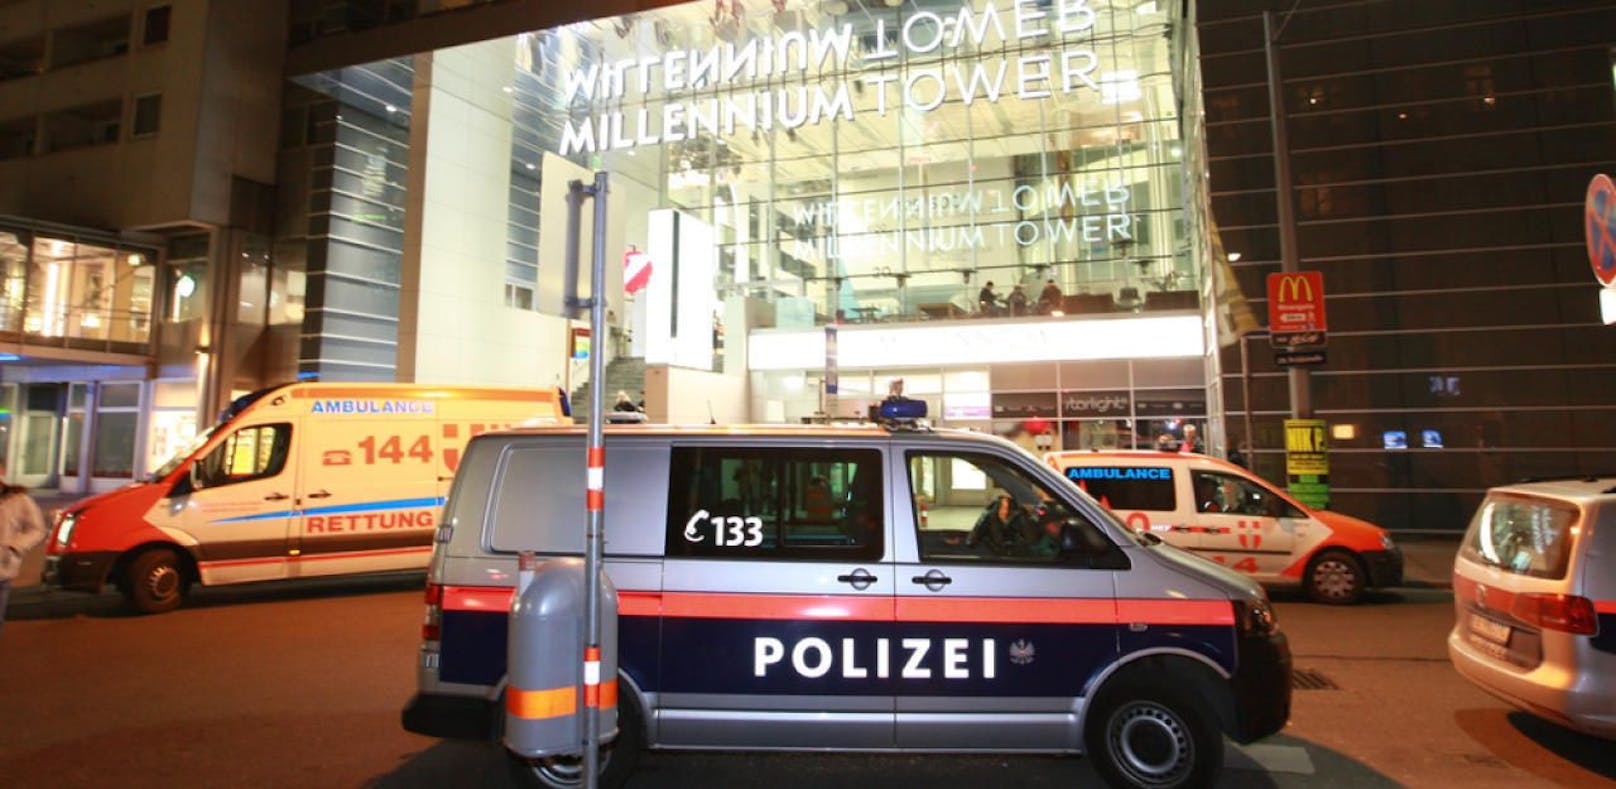 Polizeinsatz im Wiener UCI, Millennium City. (Archivfoto)